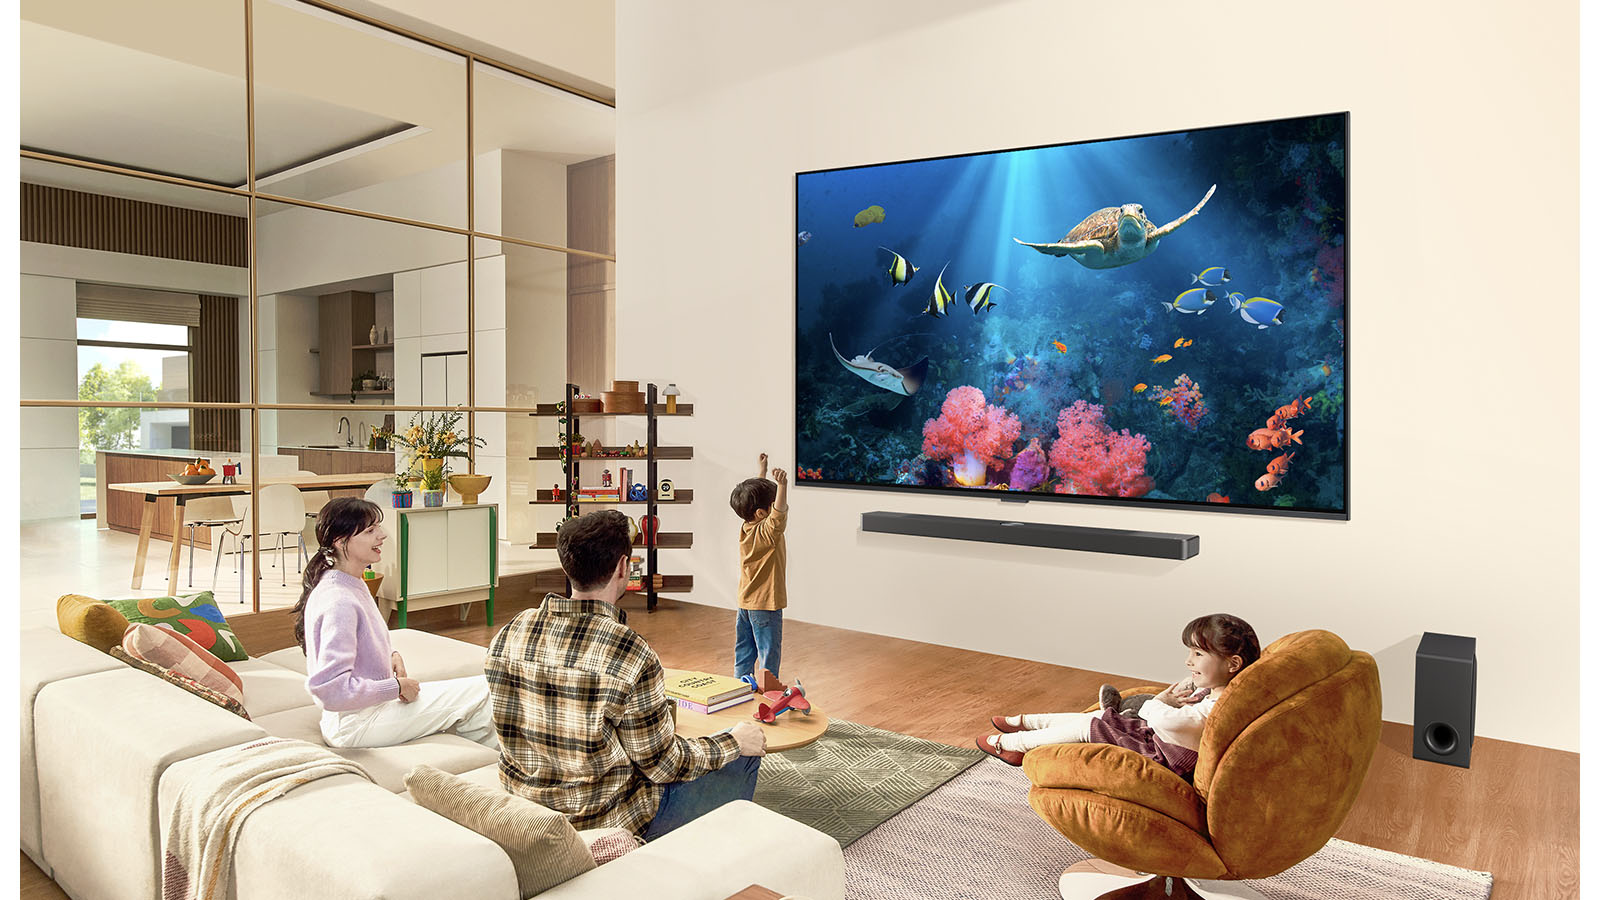 一家人在客廳中觀看壁掛的超大型 LG TV，螢幕上顯示包括珊瑚和海龜的海洋景色。